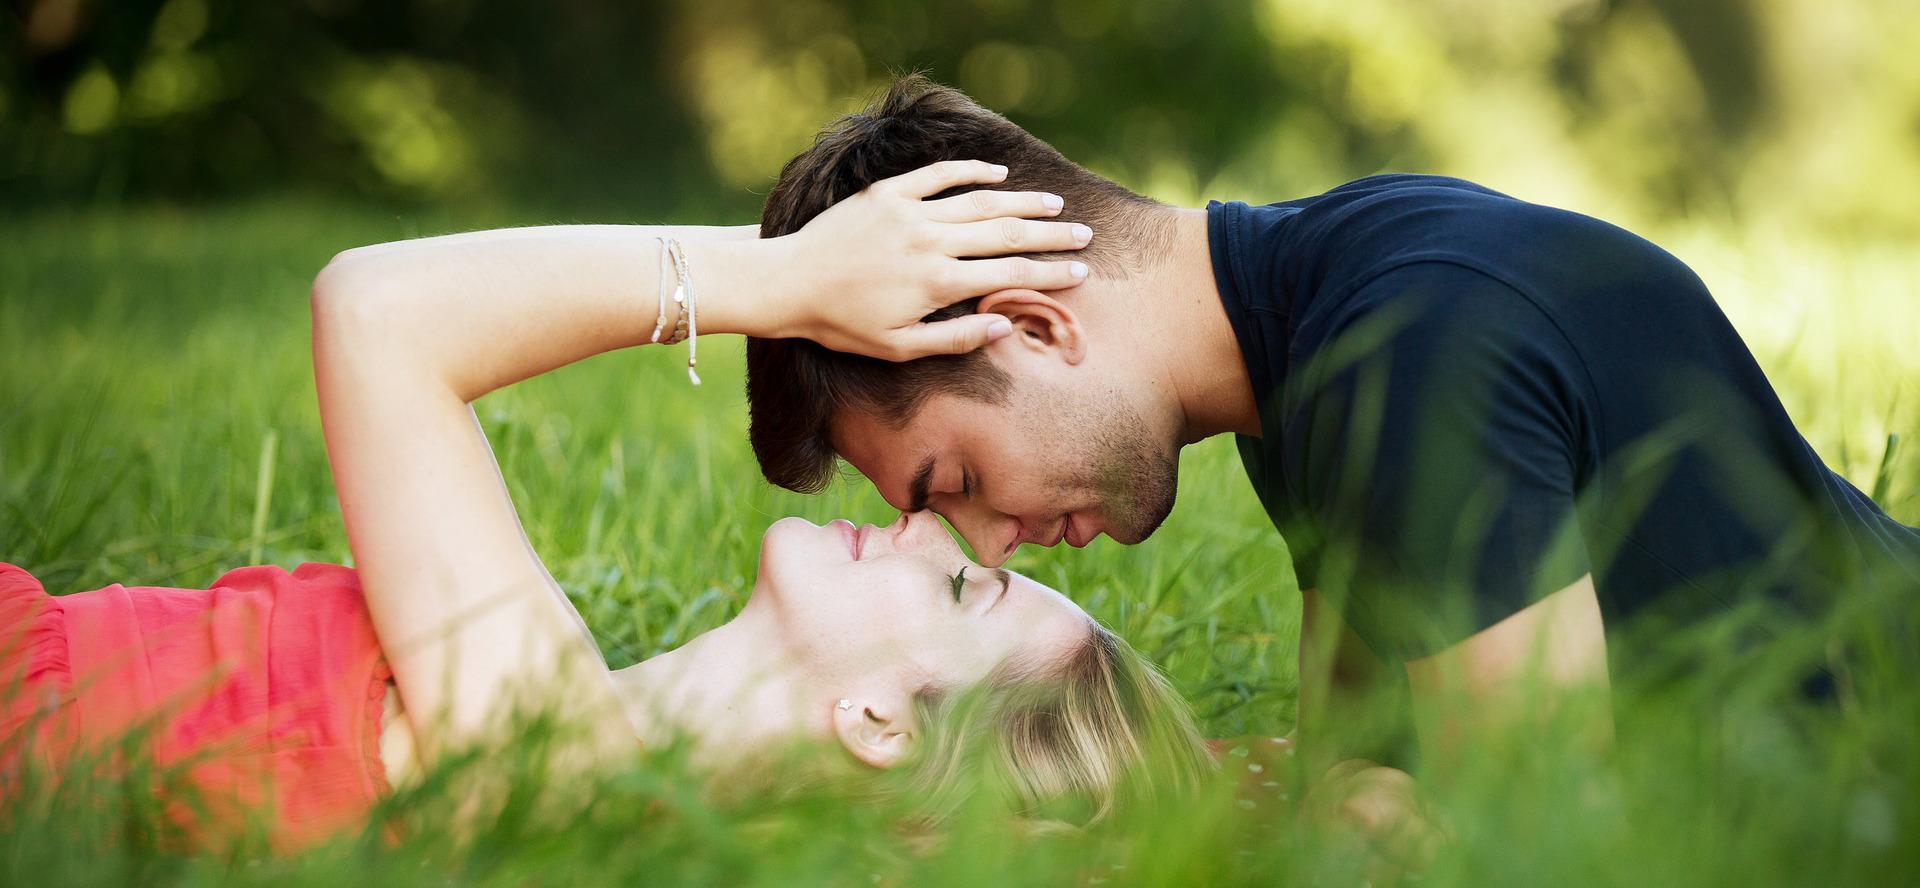 dating site e-mail advies Christelijke dating kus op de eerste datum